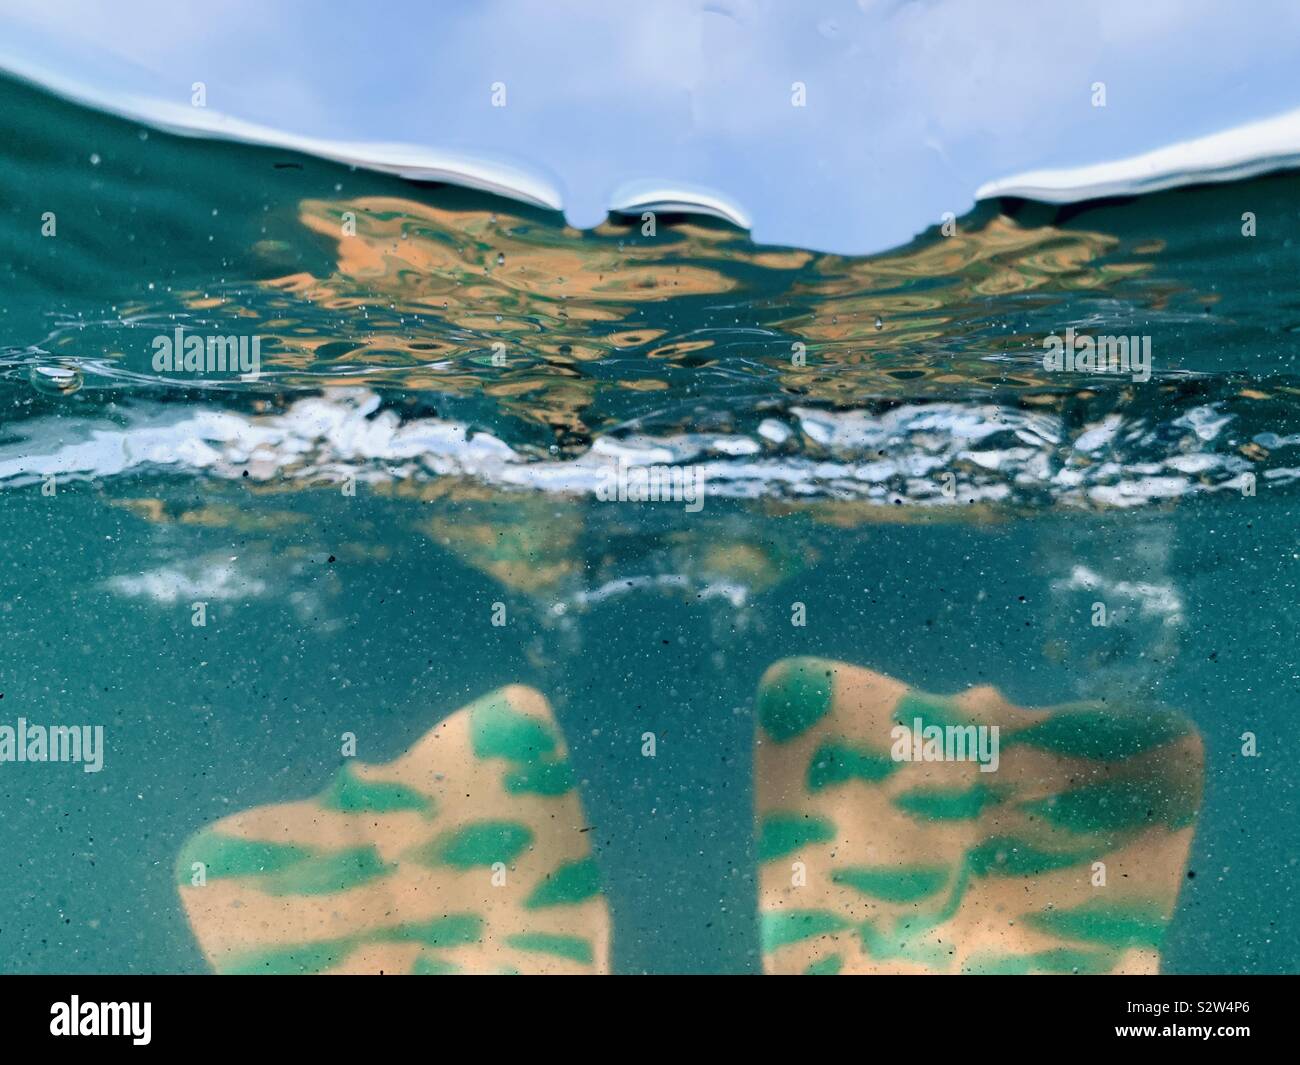 Bodysurfing swim fins underwater. Stock Photo